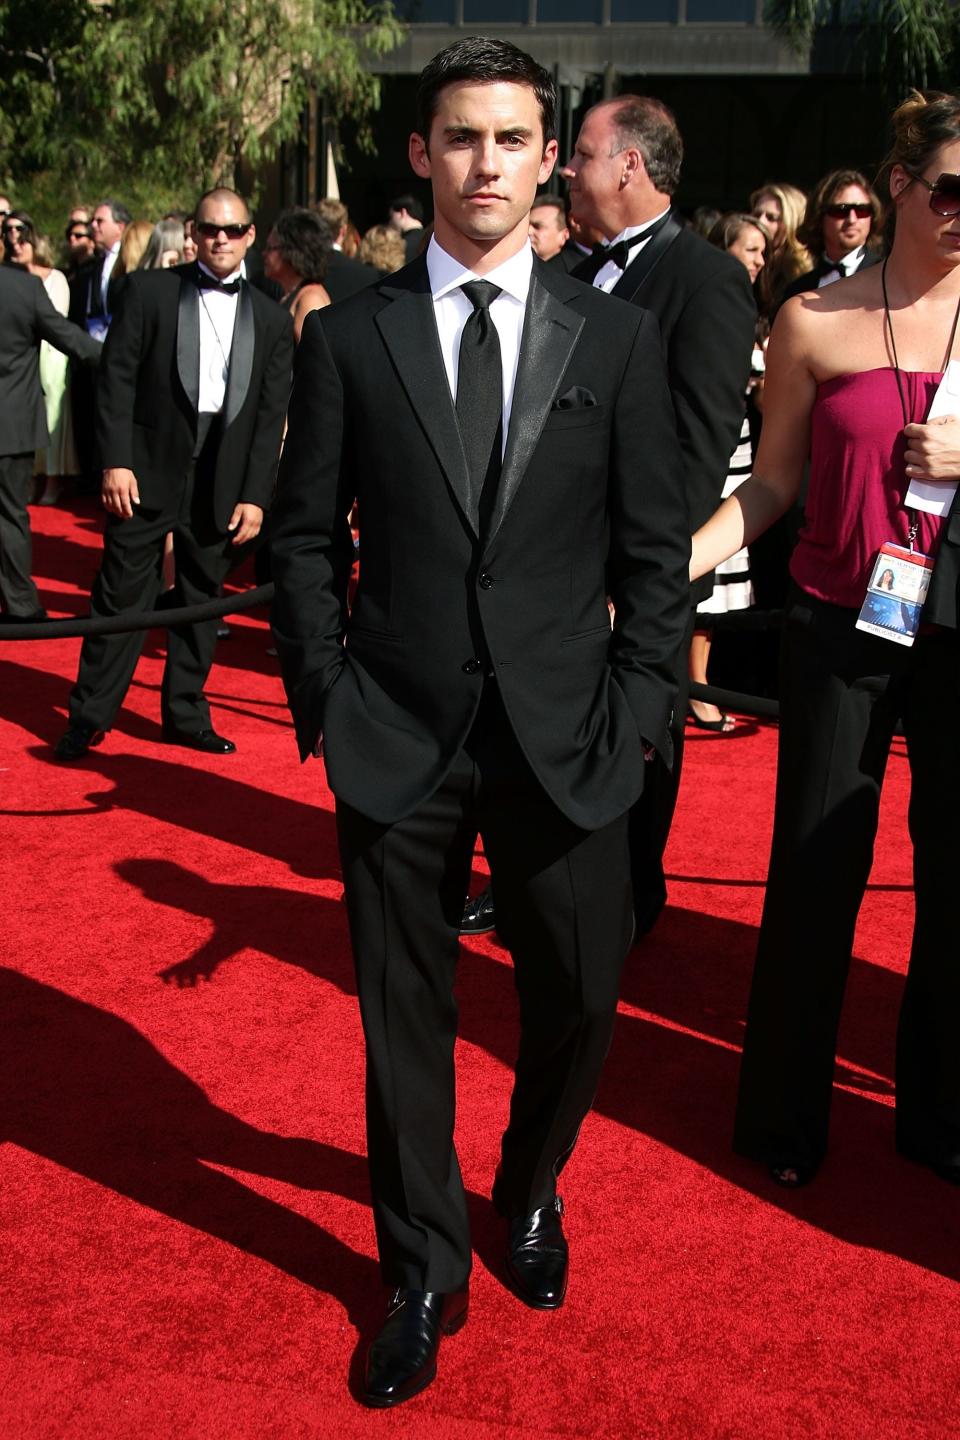 Milo Ventimiglia at the 2007 Emmys